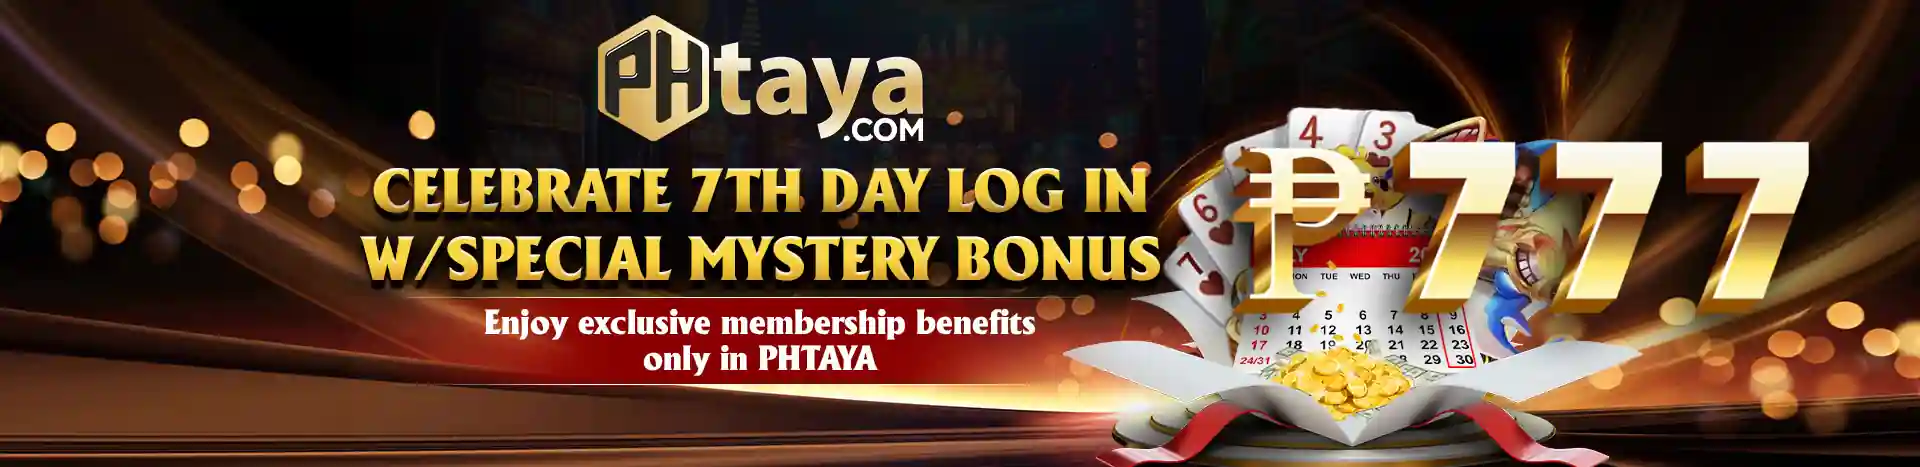 Phtaya online casino